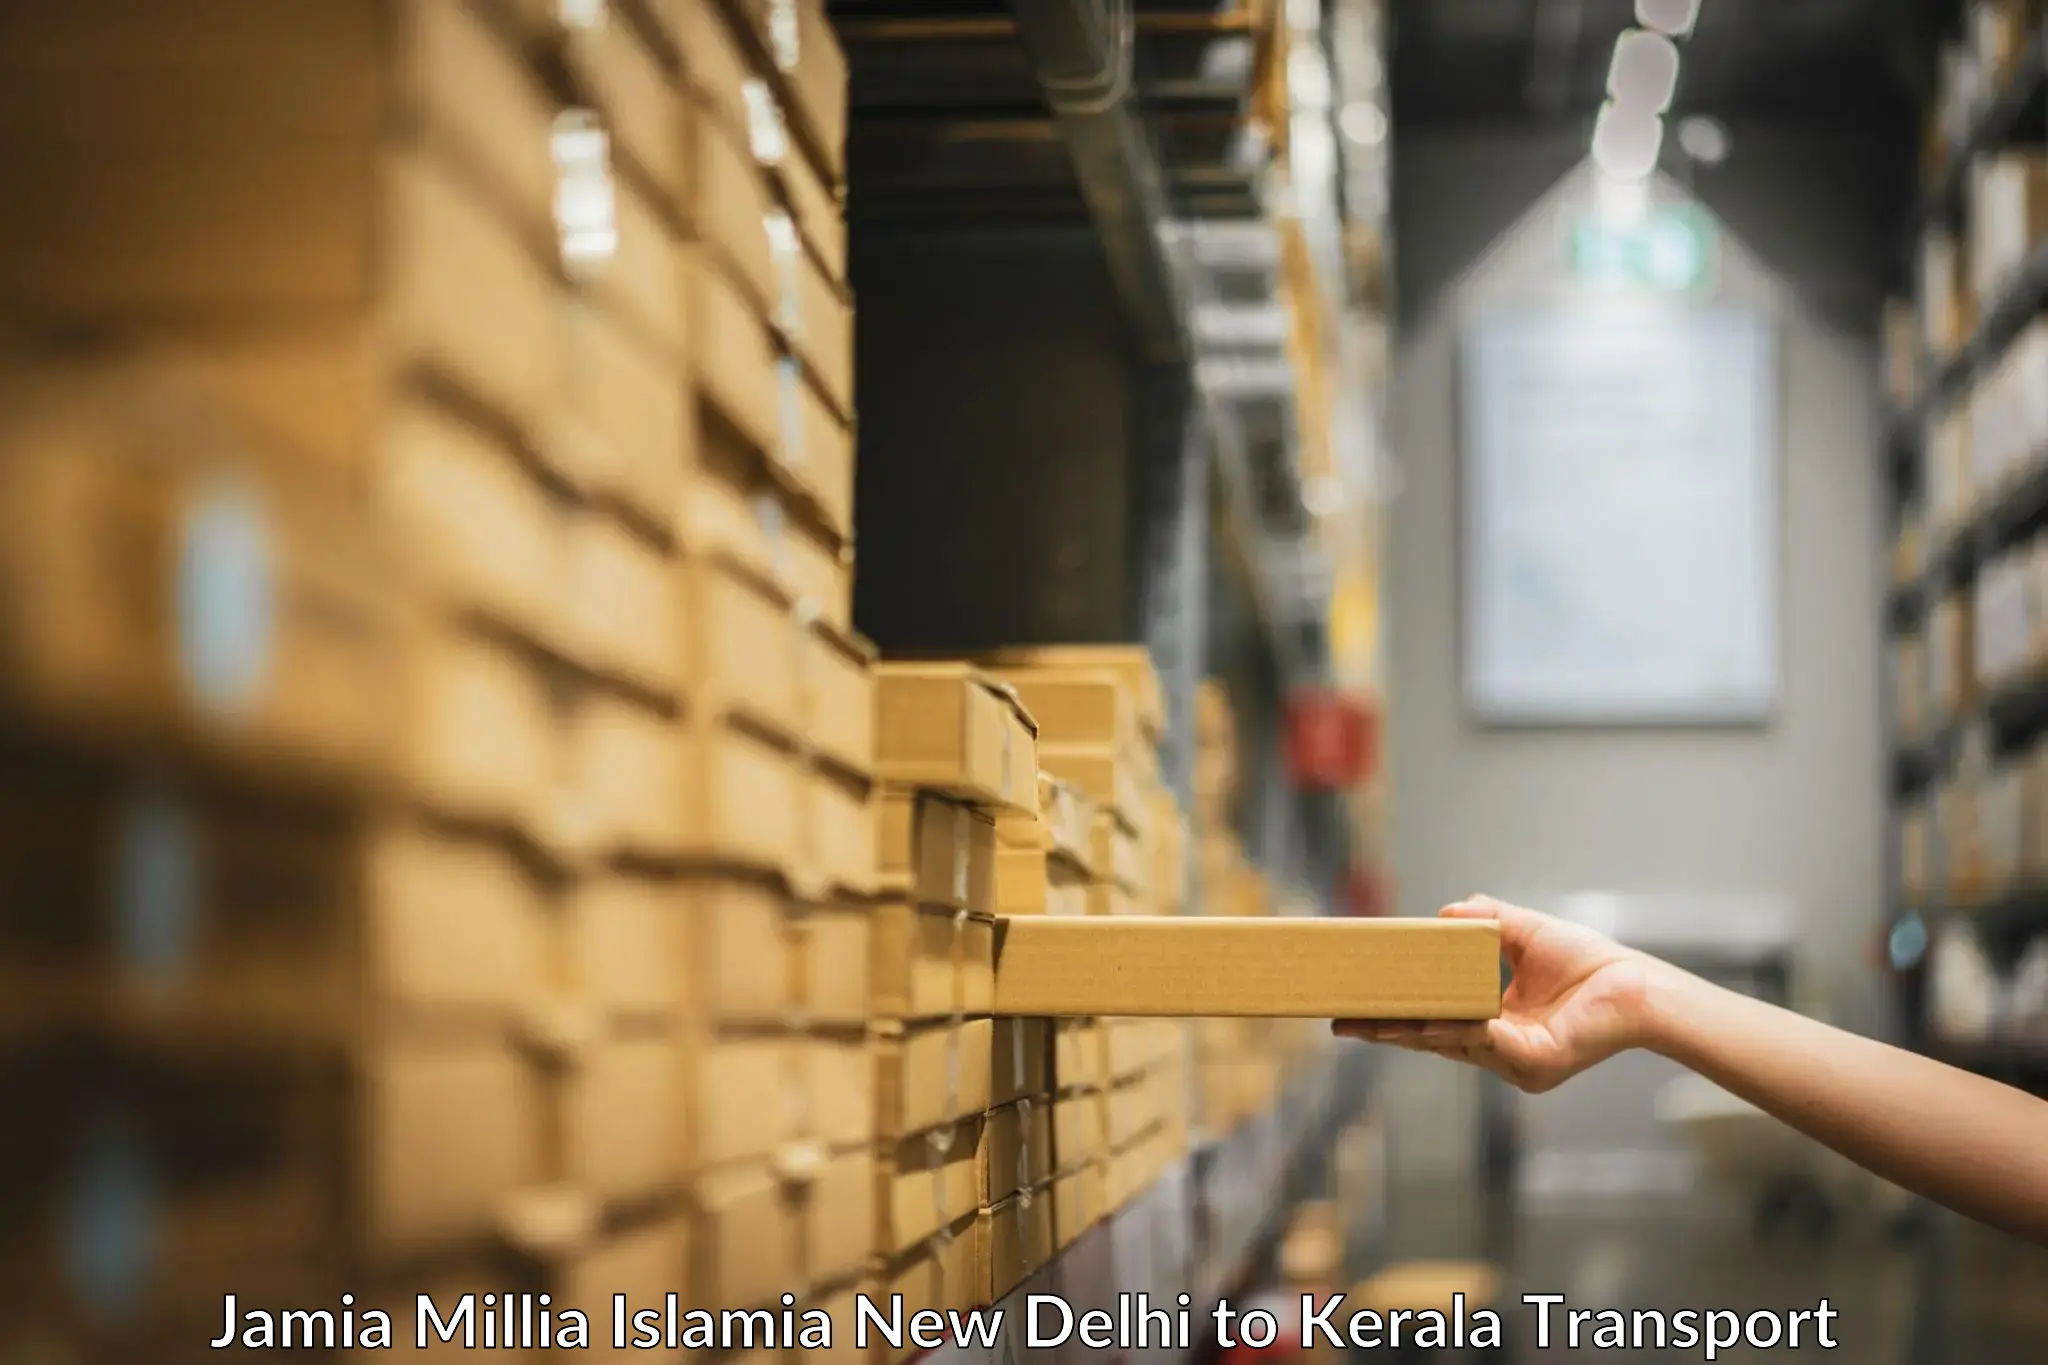 Commercial transport service Jamia Millia Islamia New Delhi to Anjumoorthy